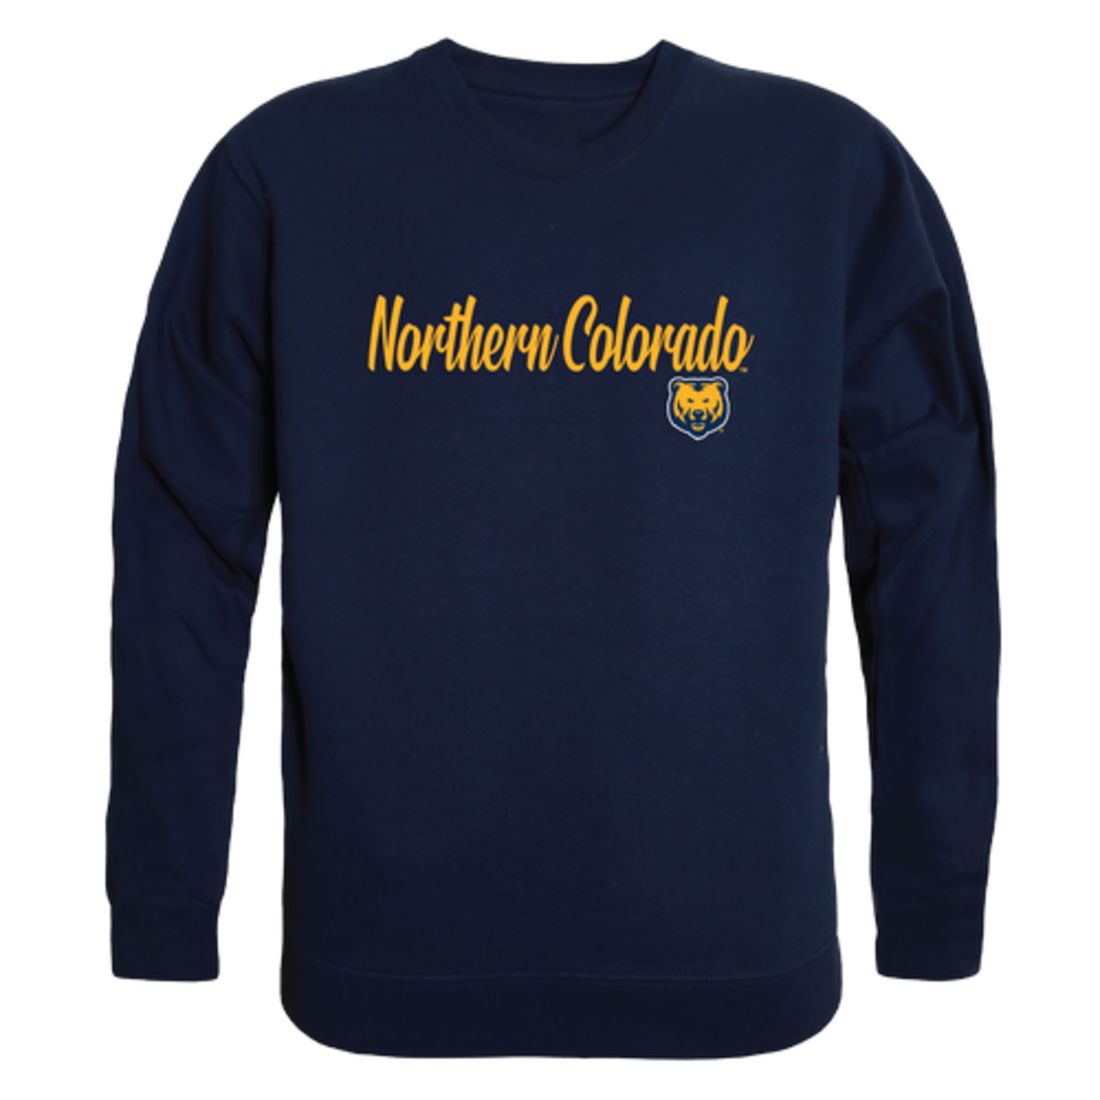 University of Northern Colorado Bears Script Crewneck Pullover Sweatshirt Sweater Black-Campus-Wardrobe